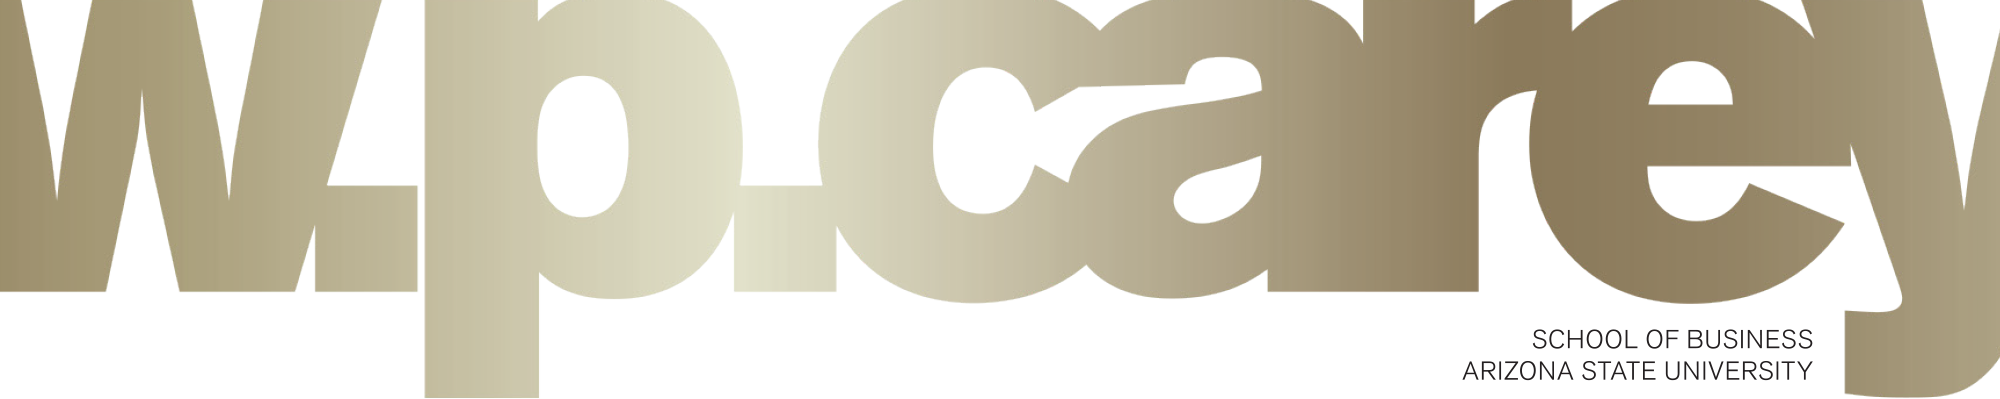 w.p. carey logo